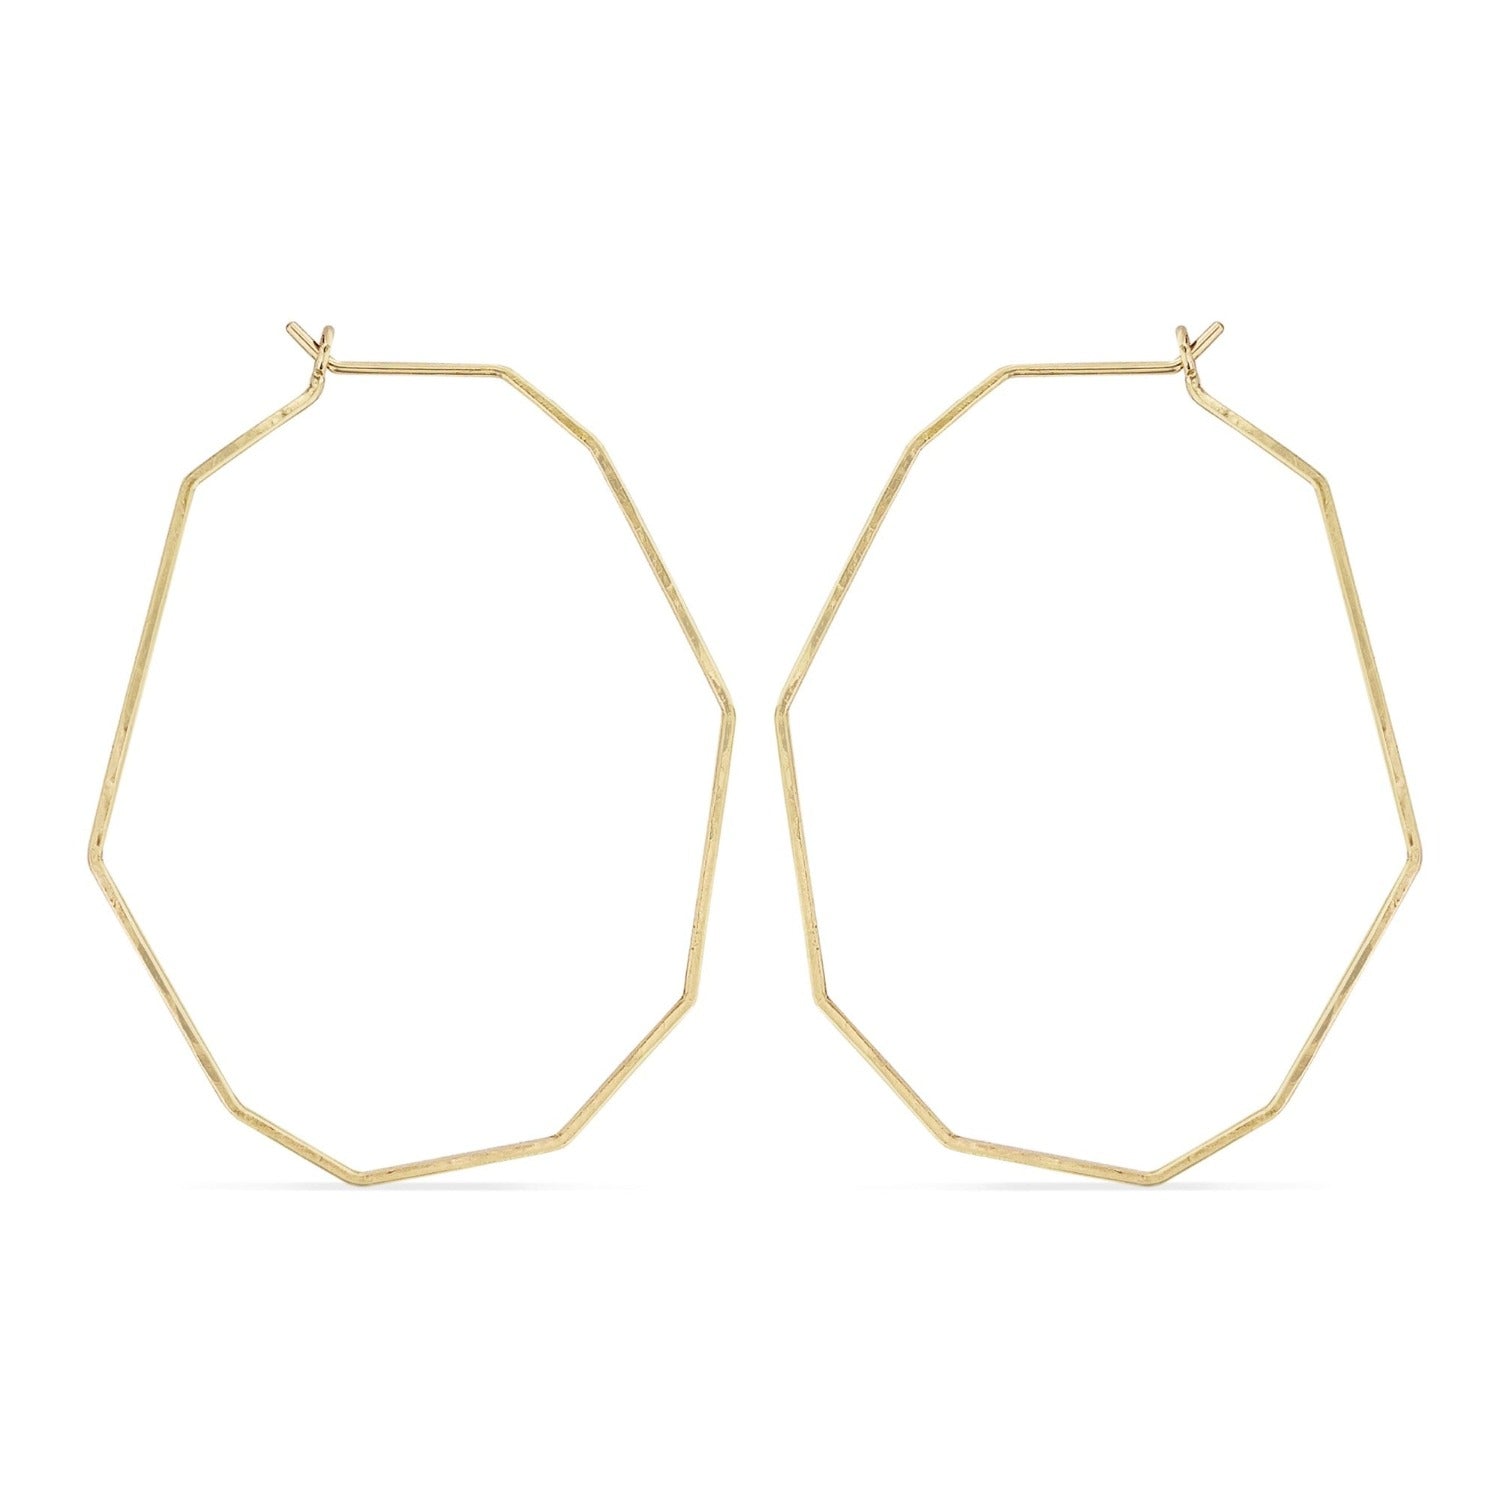 Geometric gold delicate wire hoop earrings